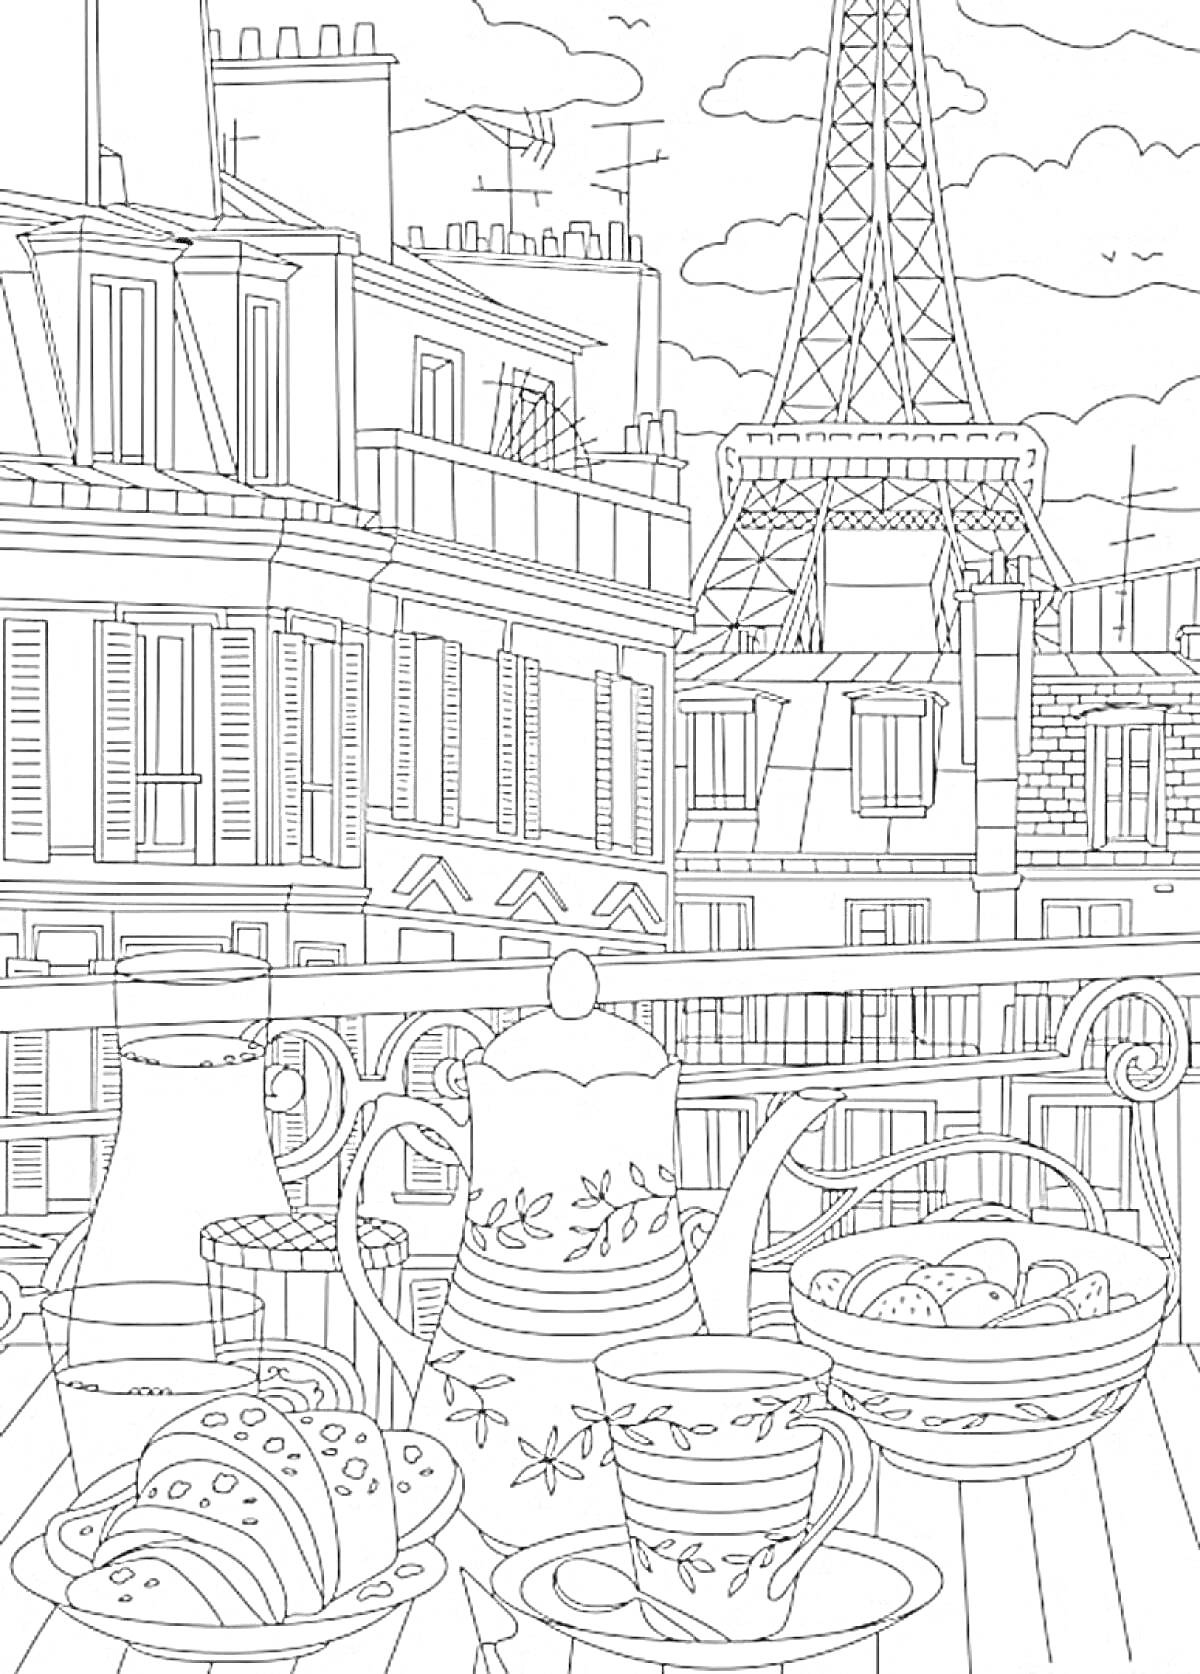 Раскраска Вид на город с балкона с завтраком, включающий чайник, чашки, круассаны, корзину с булочками и фон с Эйфелевой башней